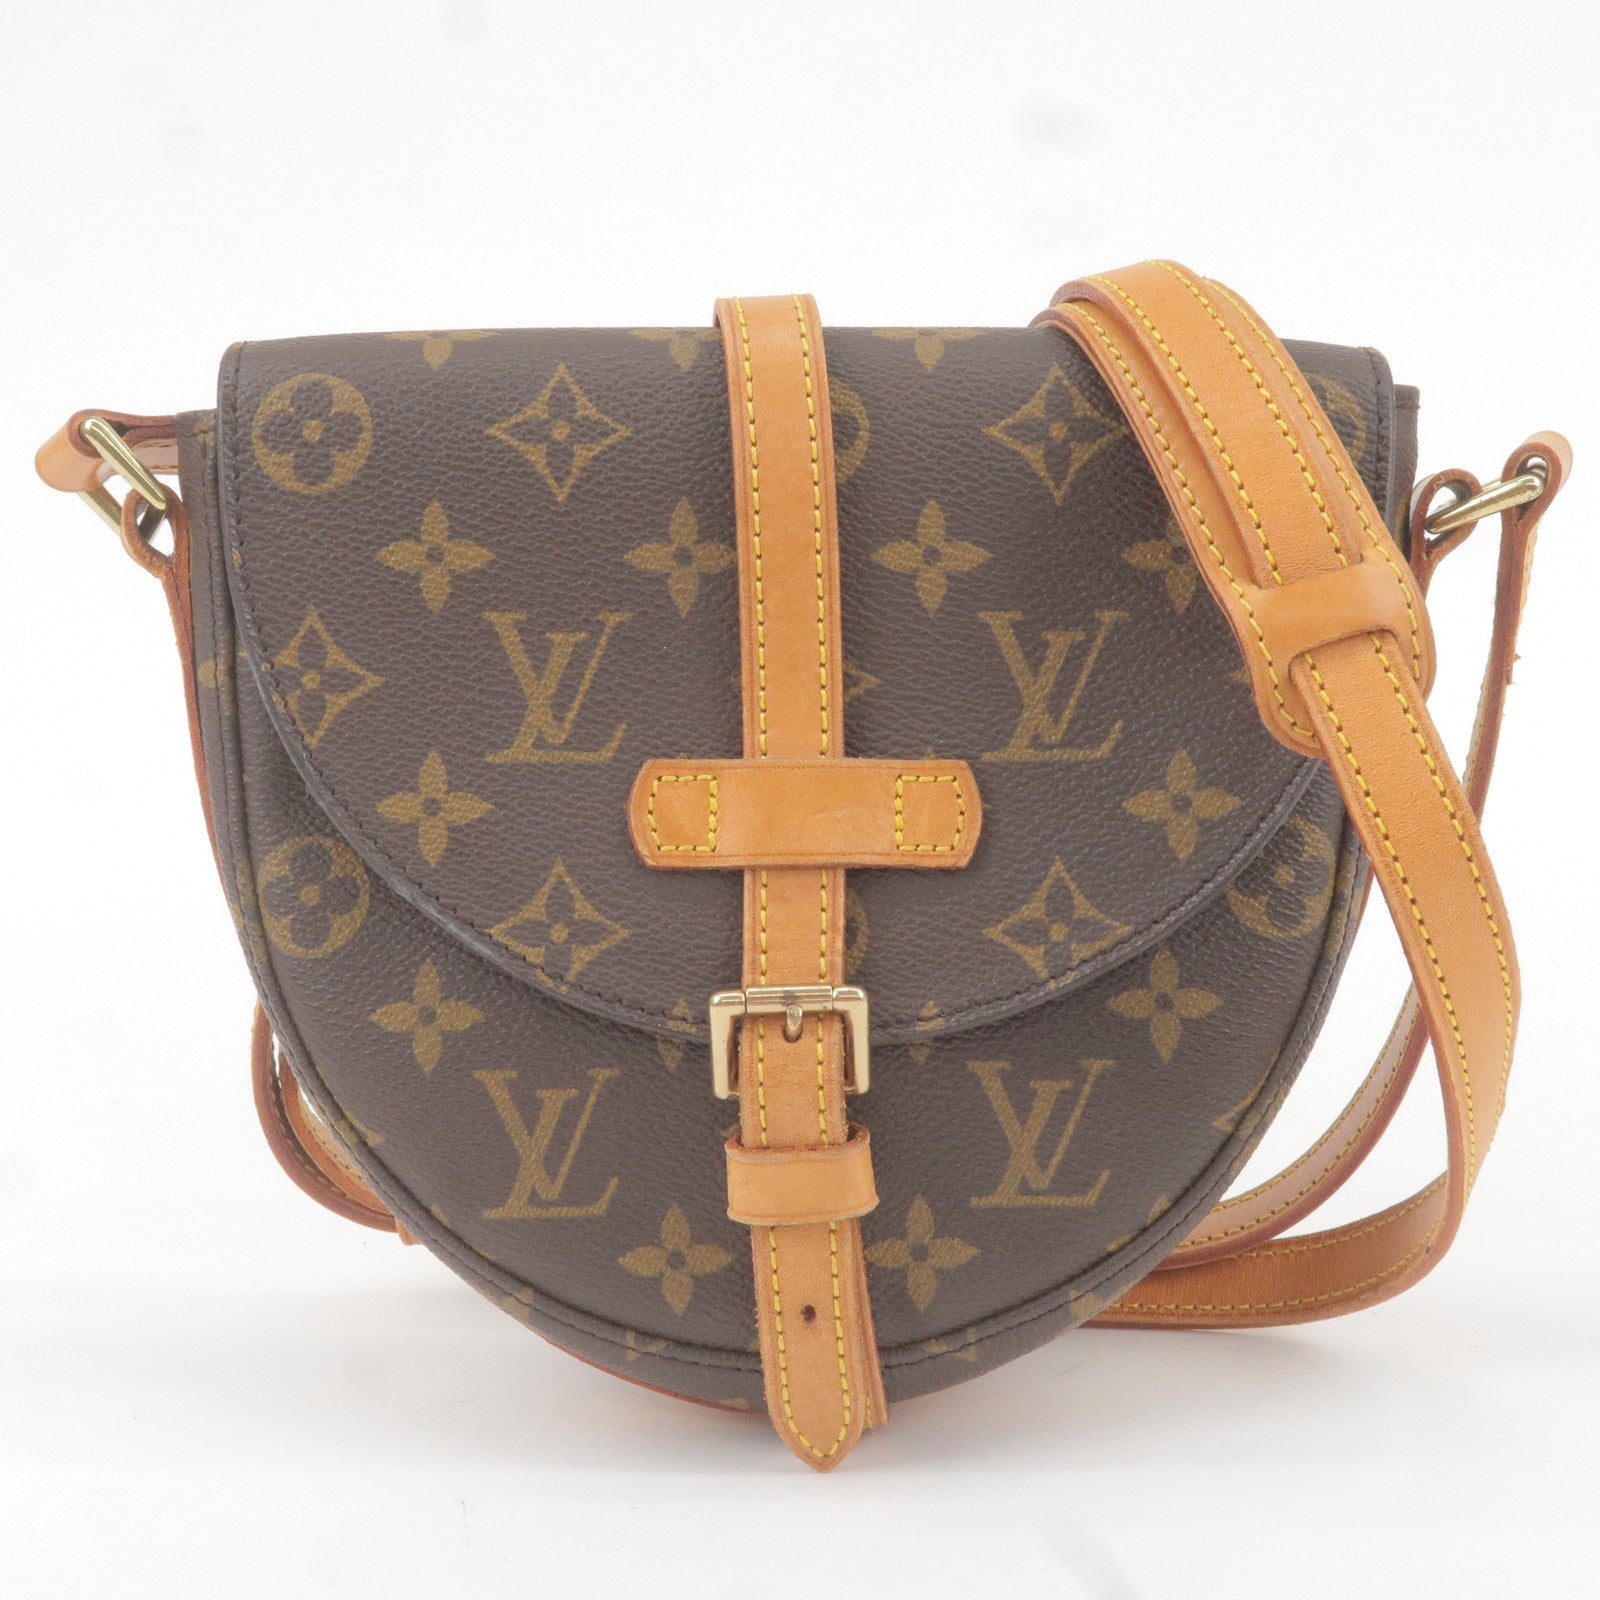 Authentic Louis Vuitton x Virgil Abloh Men's Ambassadeur PM Bag